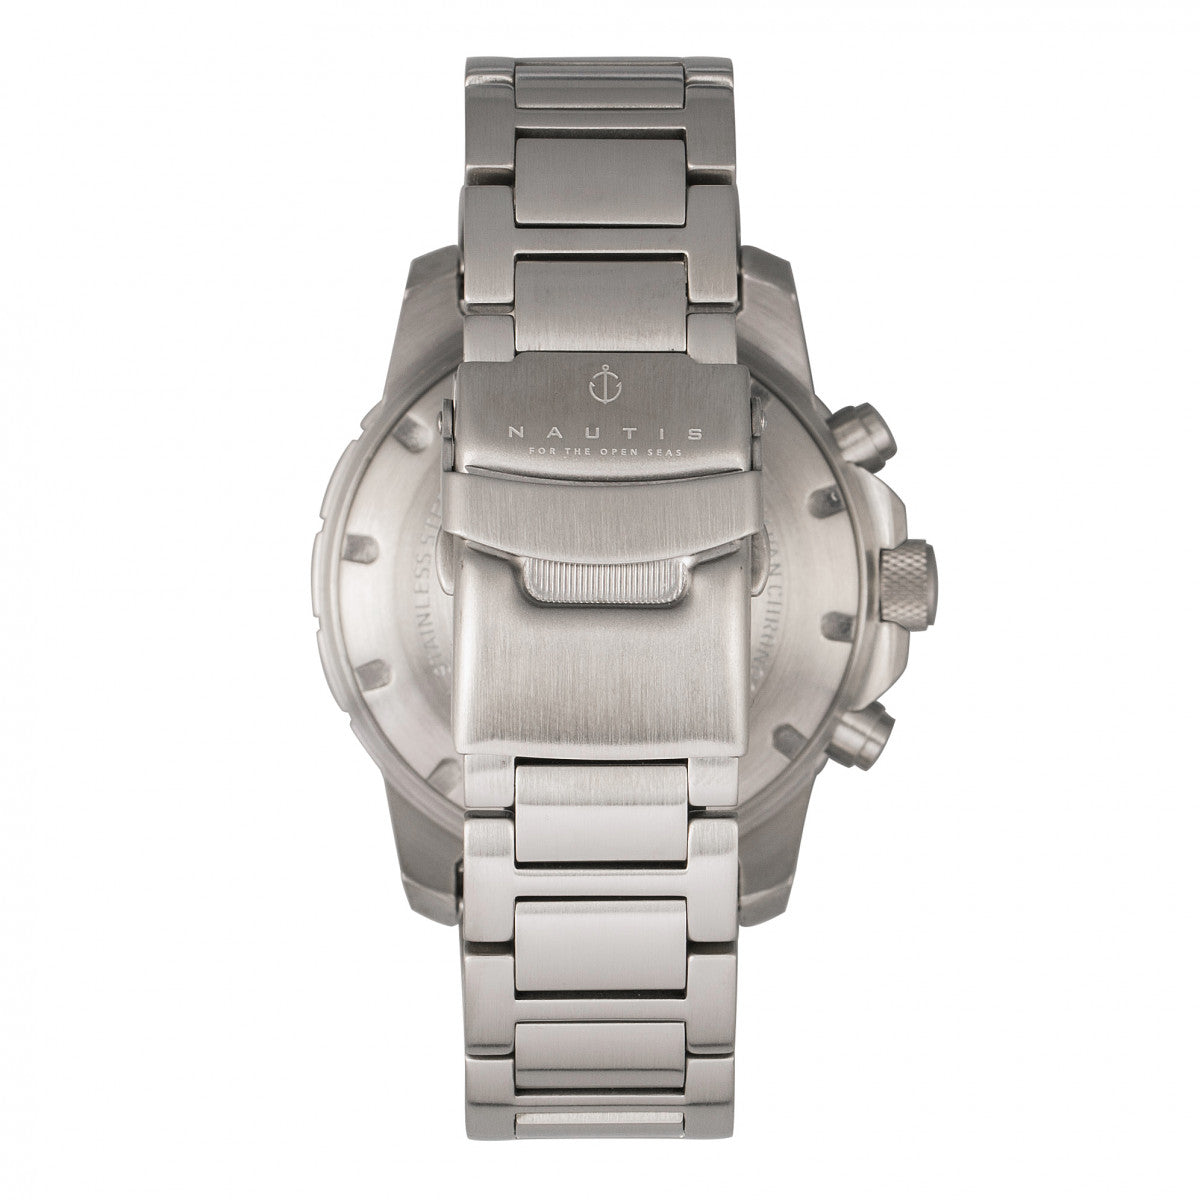 Nautis Dive Chrono 500 Chronograph Bracelet Watch - Blue/White - 17065-F